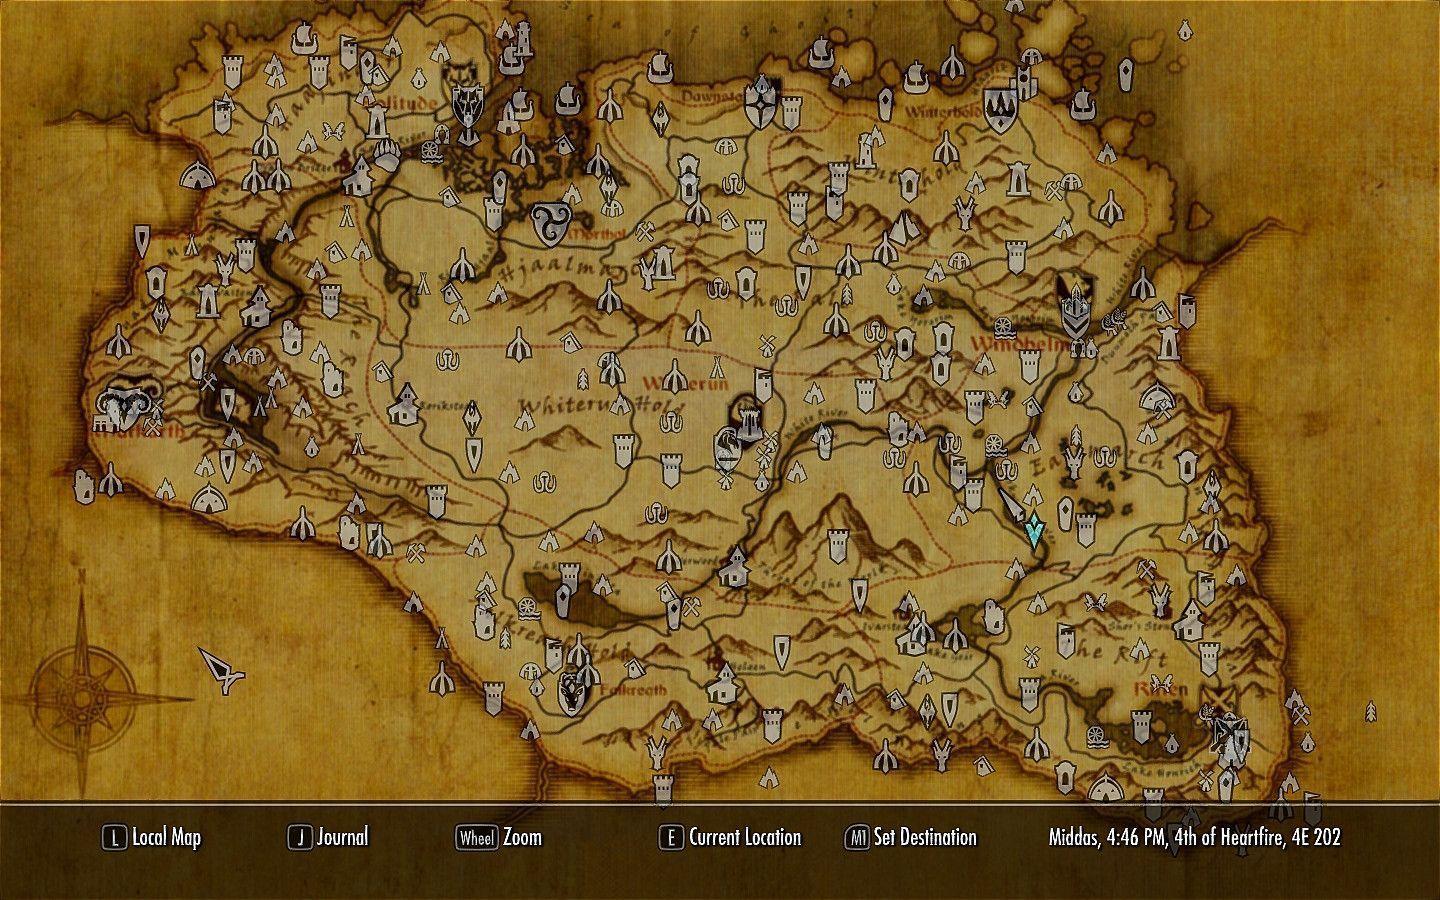 Skyrim Map Wallpapers - Wallpaper Cave